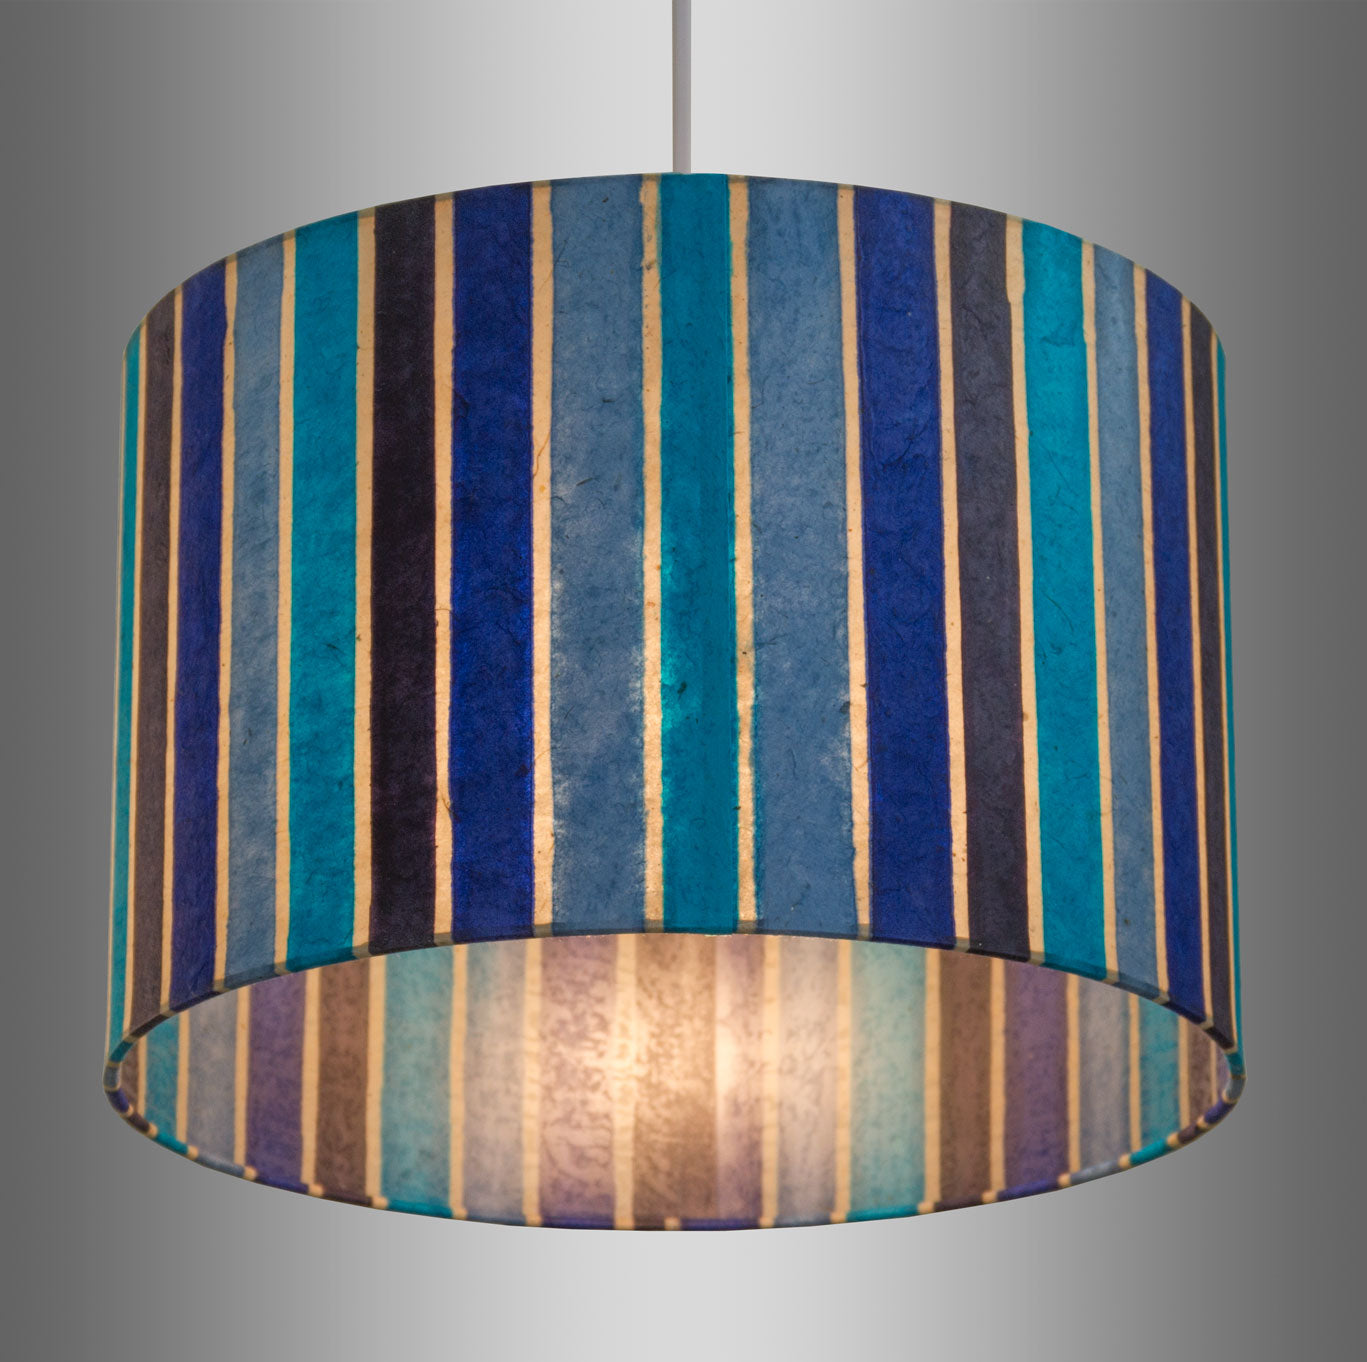 Oval Lamp Shade - P05 - Batik Stripes Blue, 40cm(w) x 20cm(h) x 30cm(d)